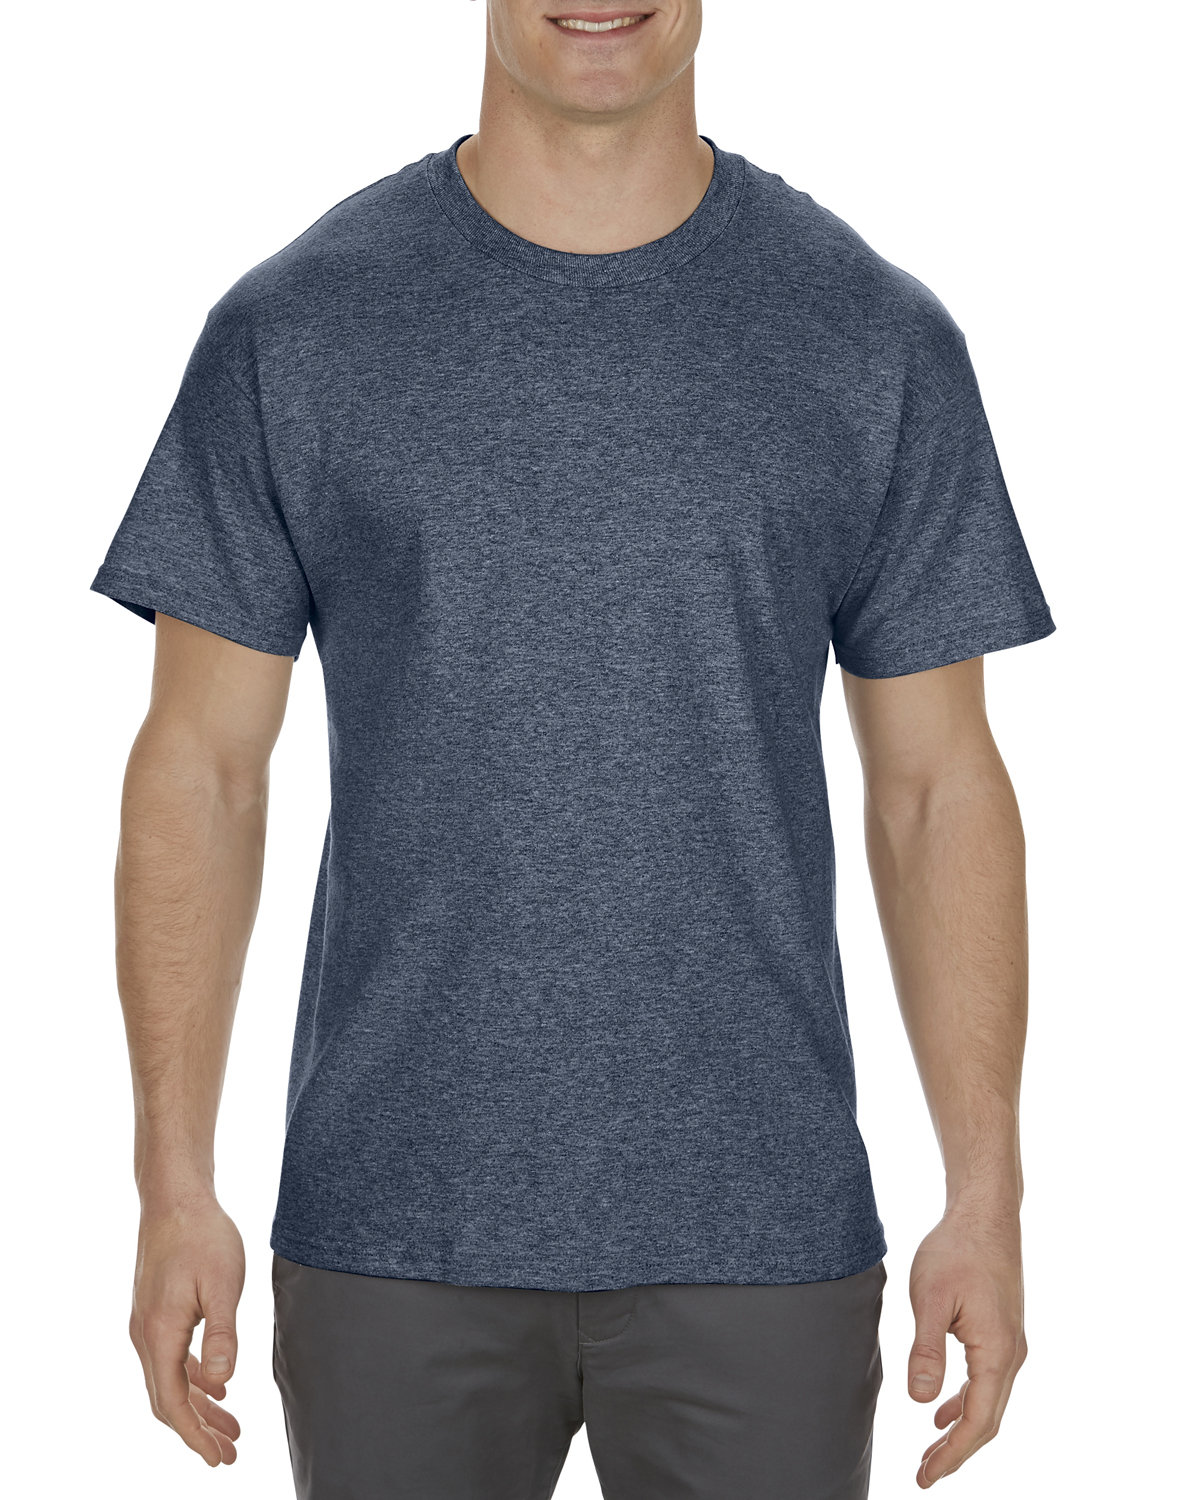 Alstyle Adult 5.1 oz. 100% Cotton T-Shirt AL1901 S-3XL Short 